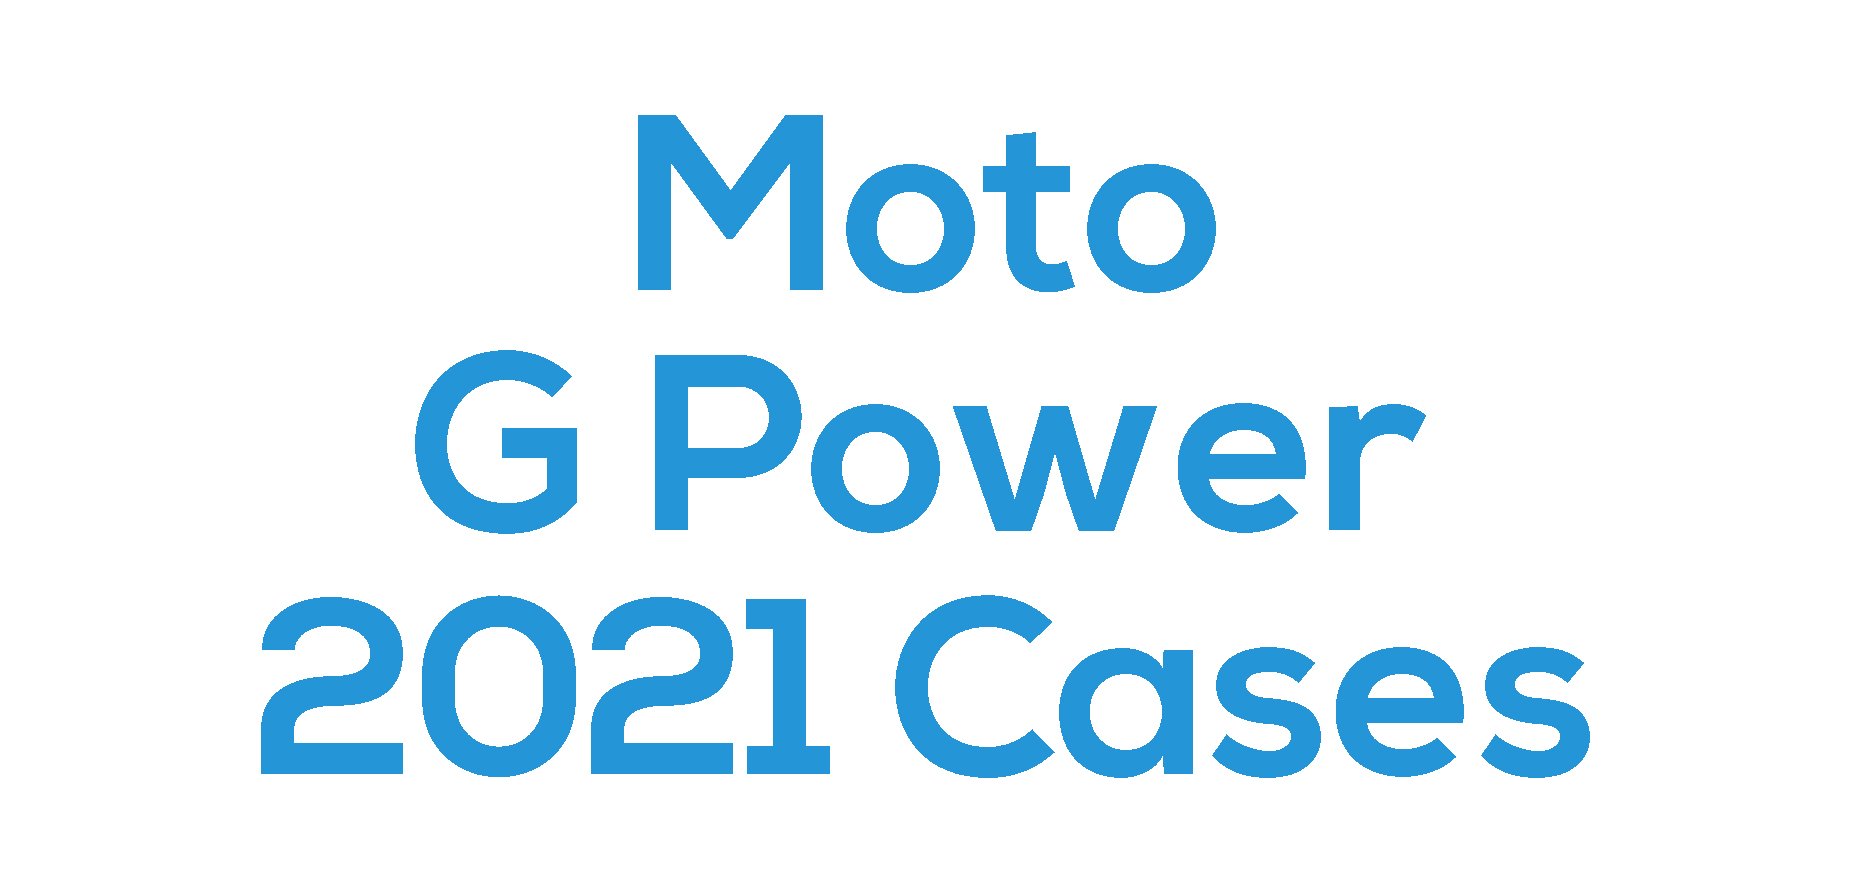 Moto G Power 2021 Cases